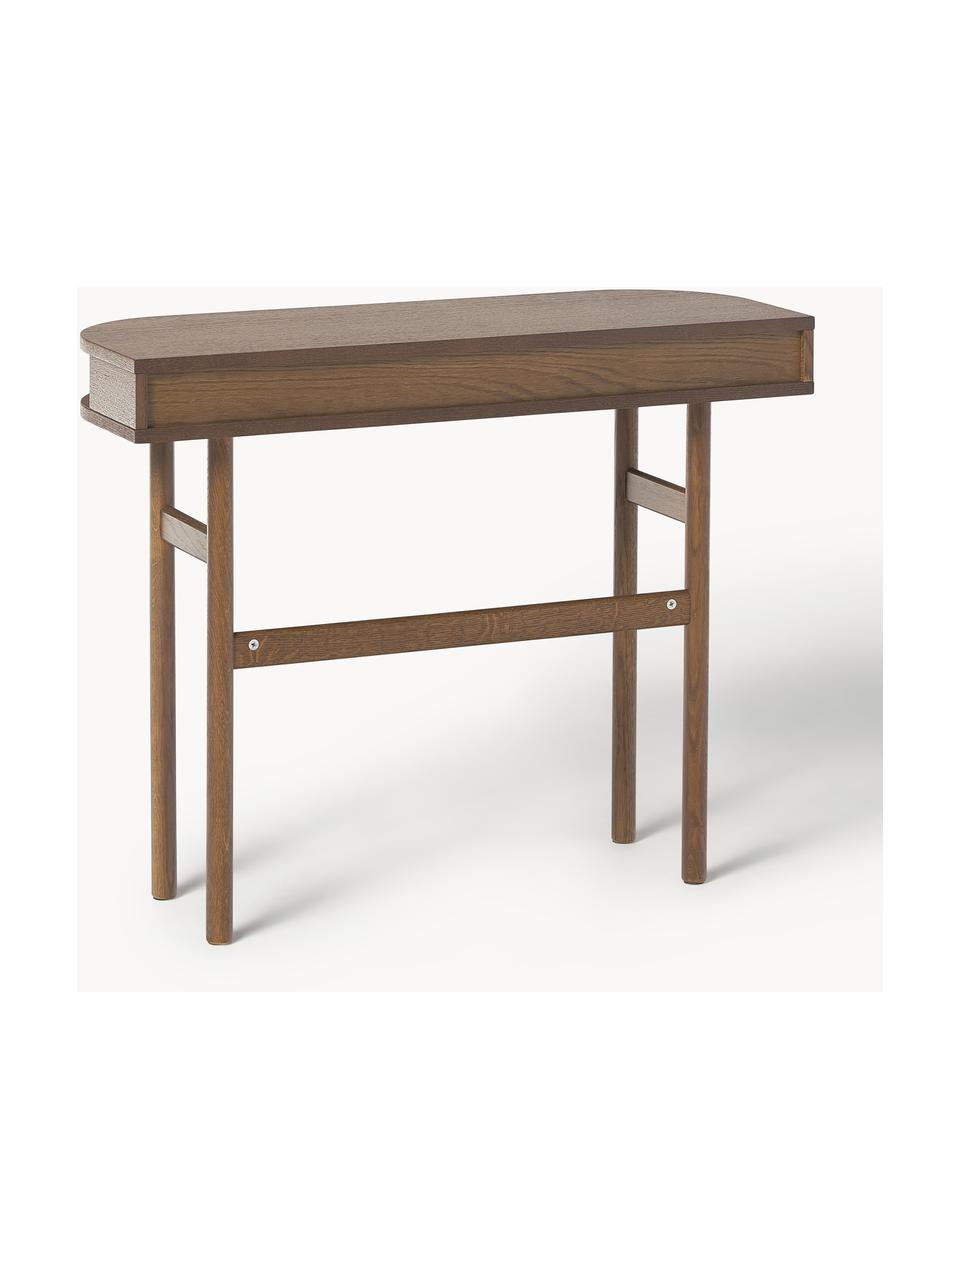 Konzolový stolek s žebrovanou přední stranou Front, Dubové dřevo, tmavě hnědě lakované, Š 100 cm, V 80 cm